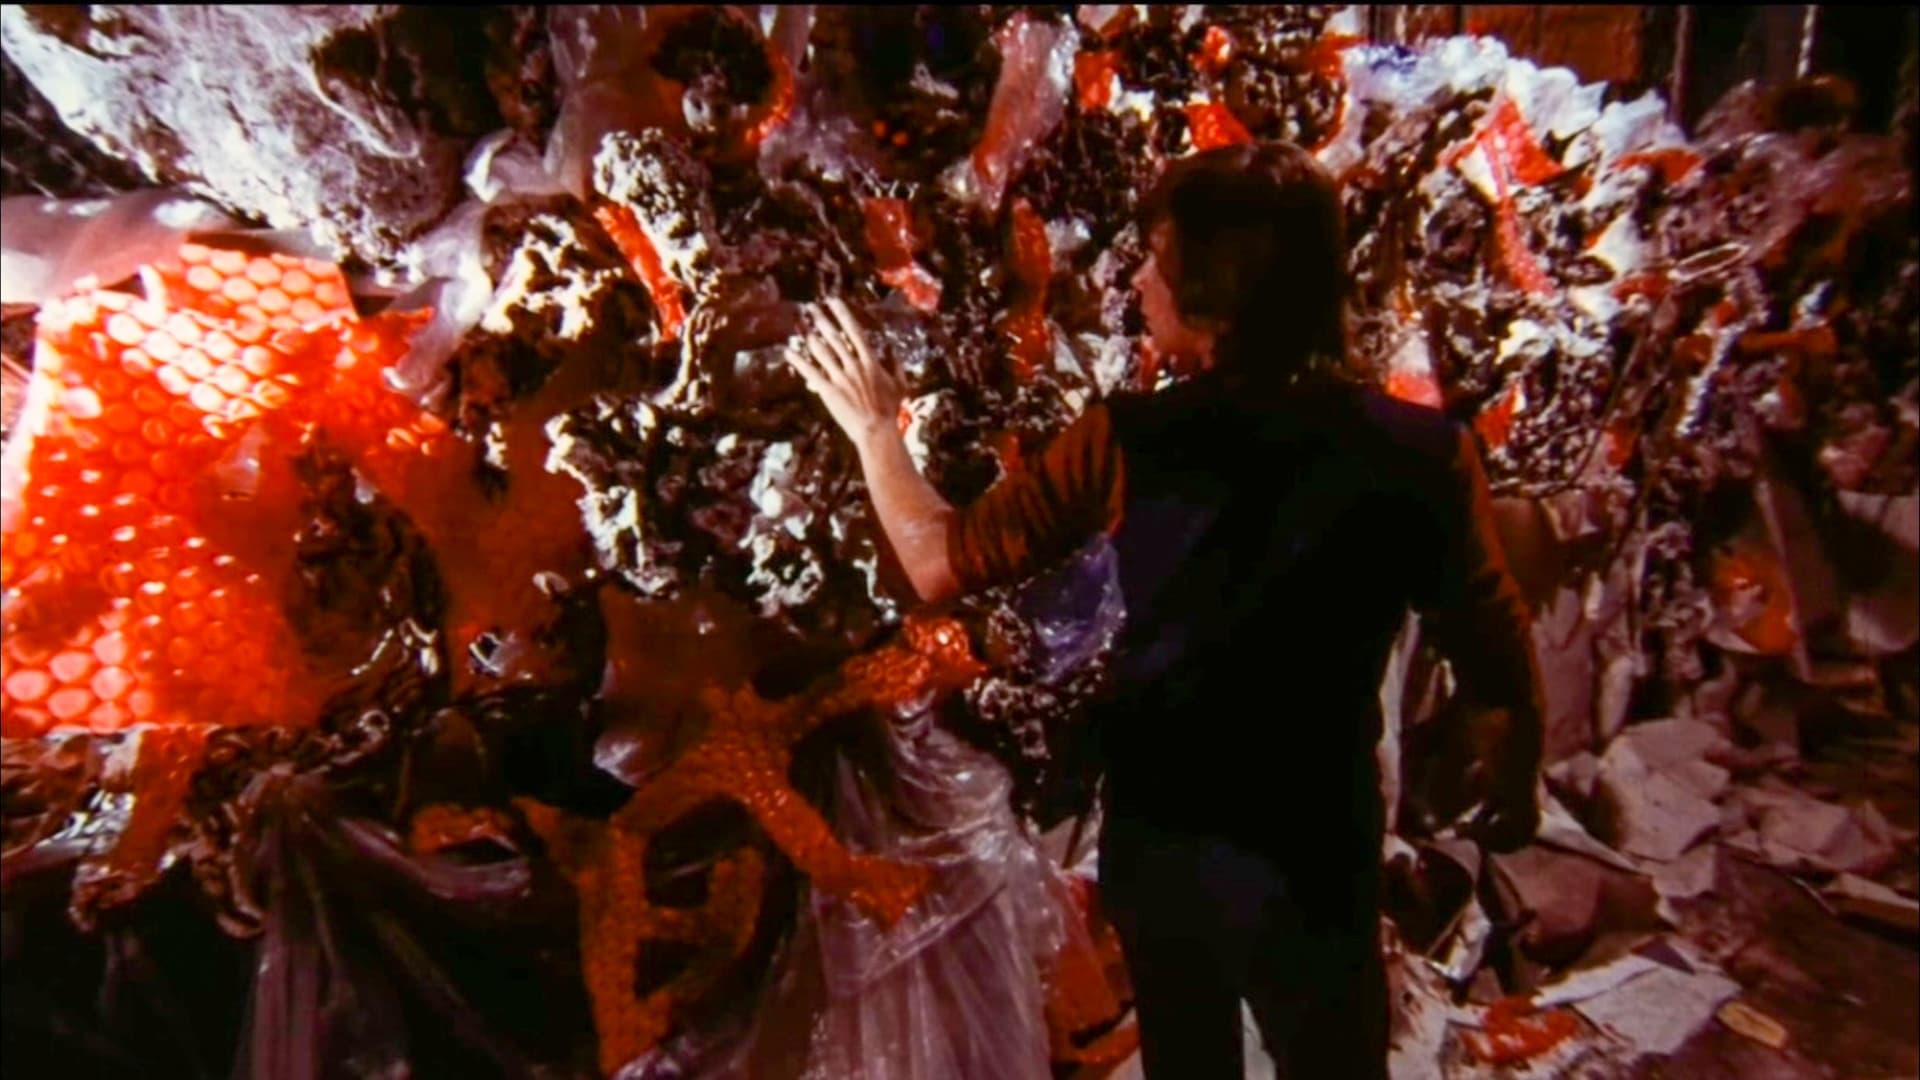 Malatesta’s Carnival of Blood (1973)